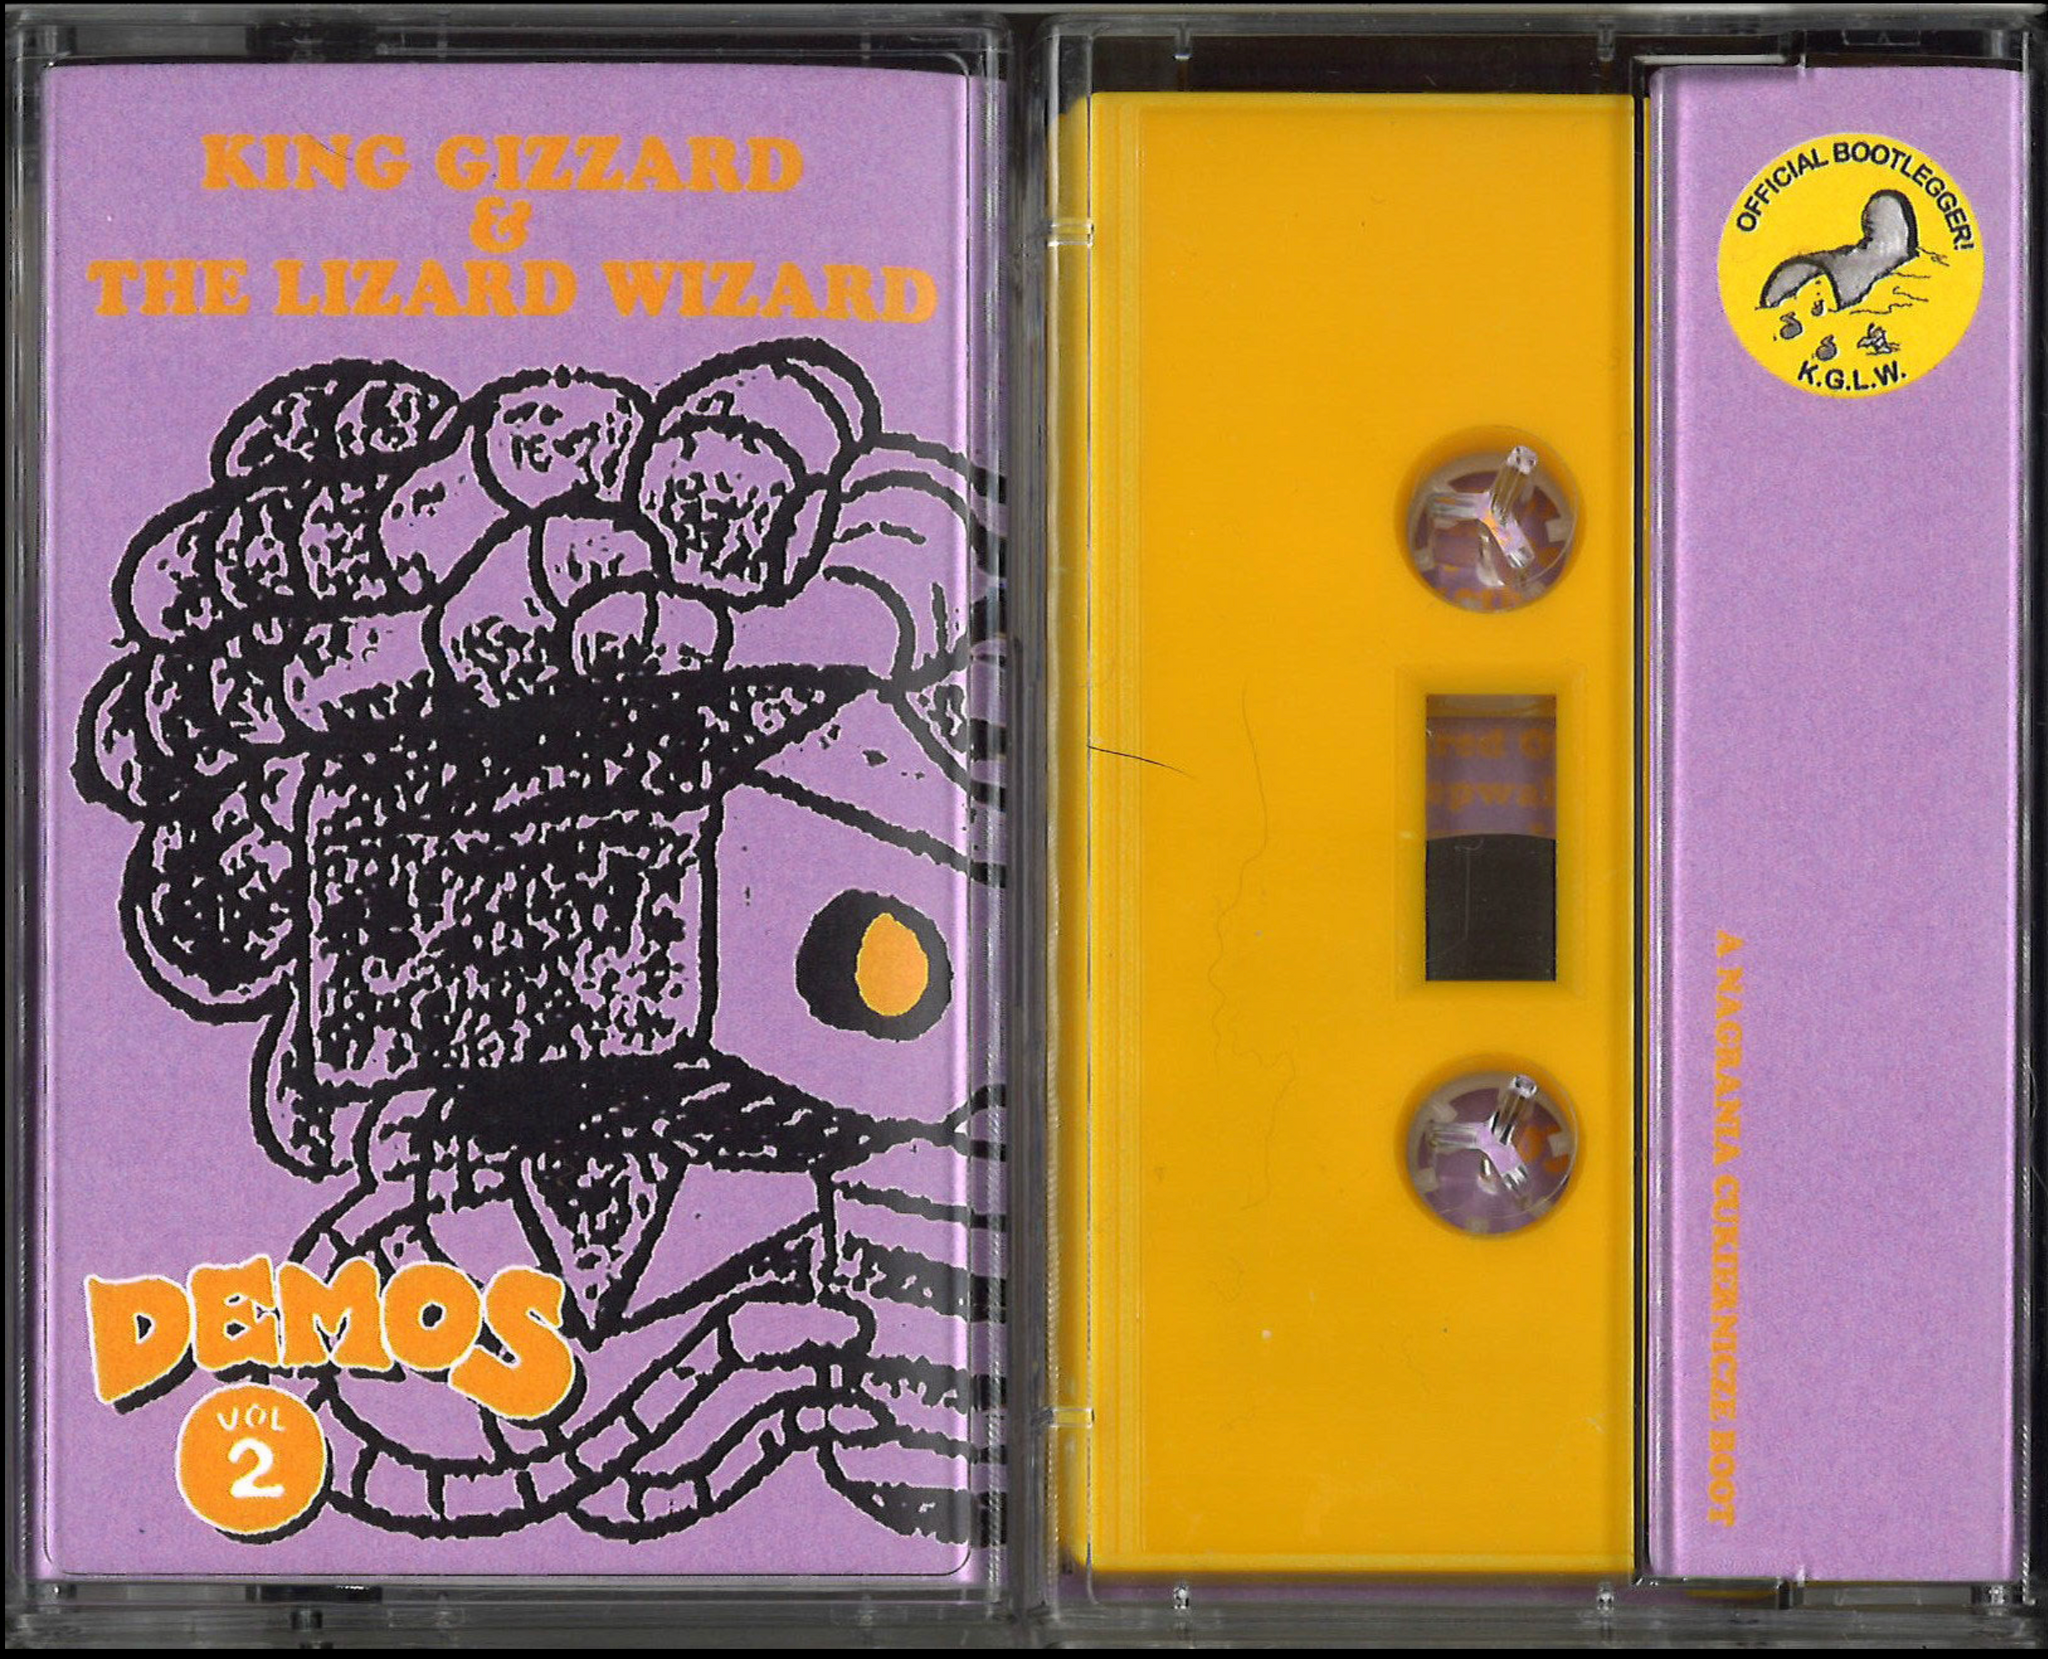 KING GIZZARD & THE LIZARD WIZARD - DEMOS VOL. 2 Cassette Tape